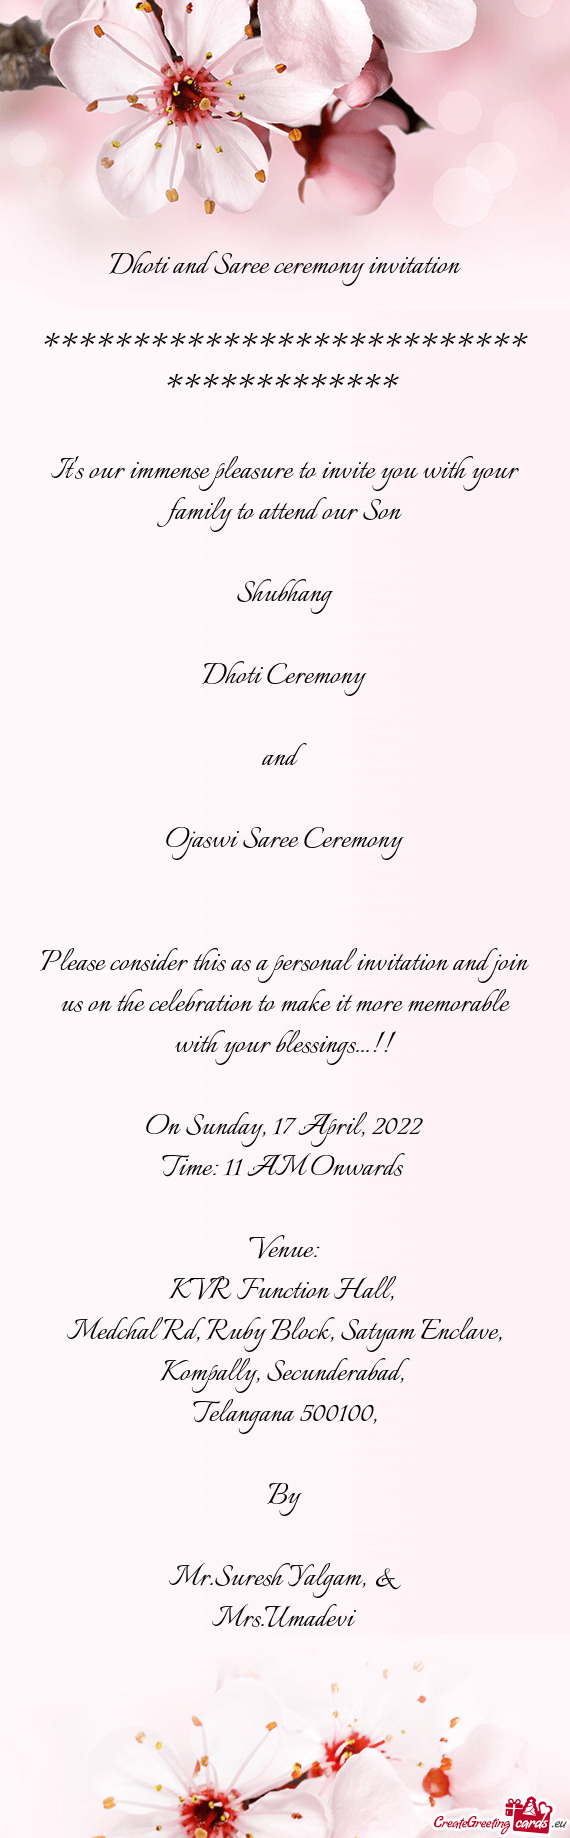 Ojaswi Saree Ceremony